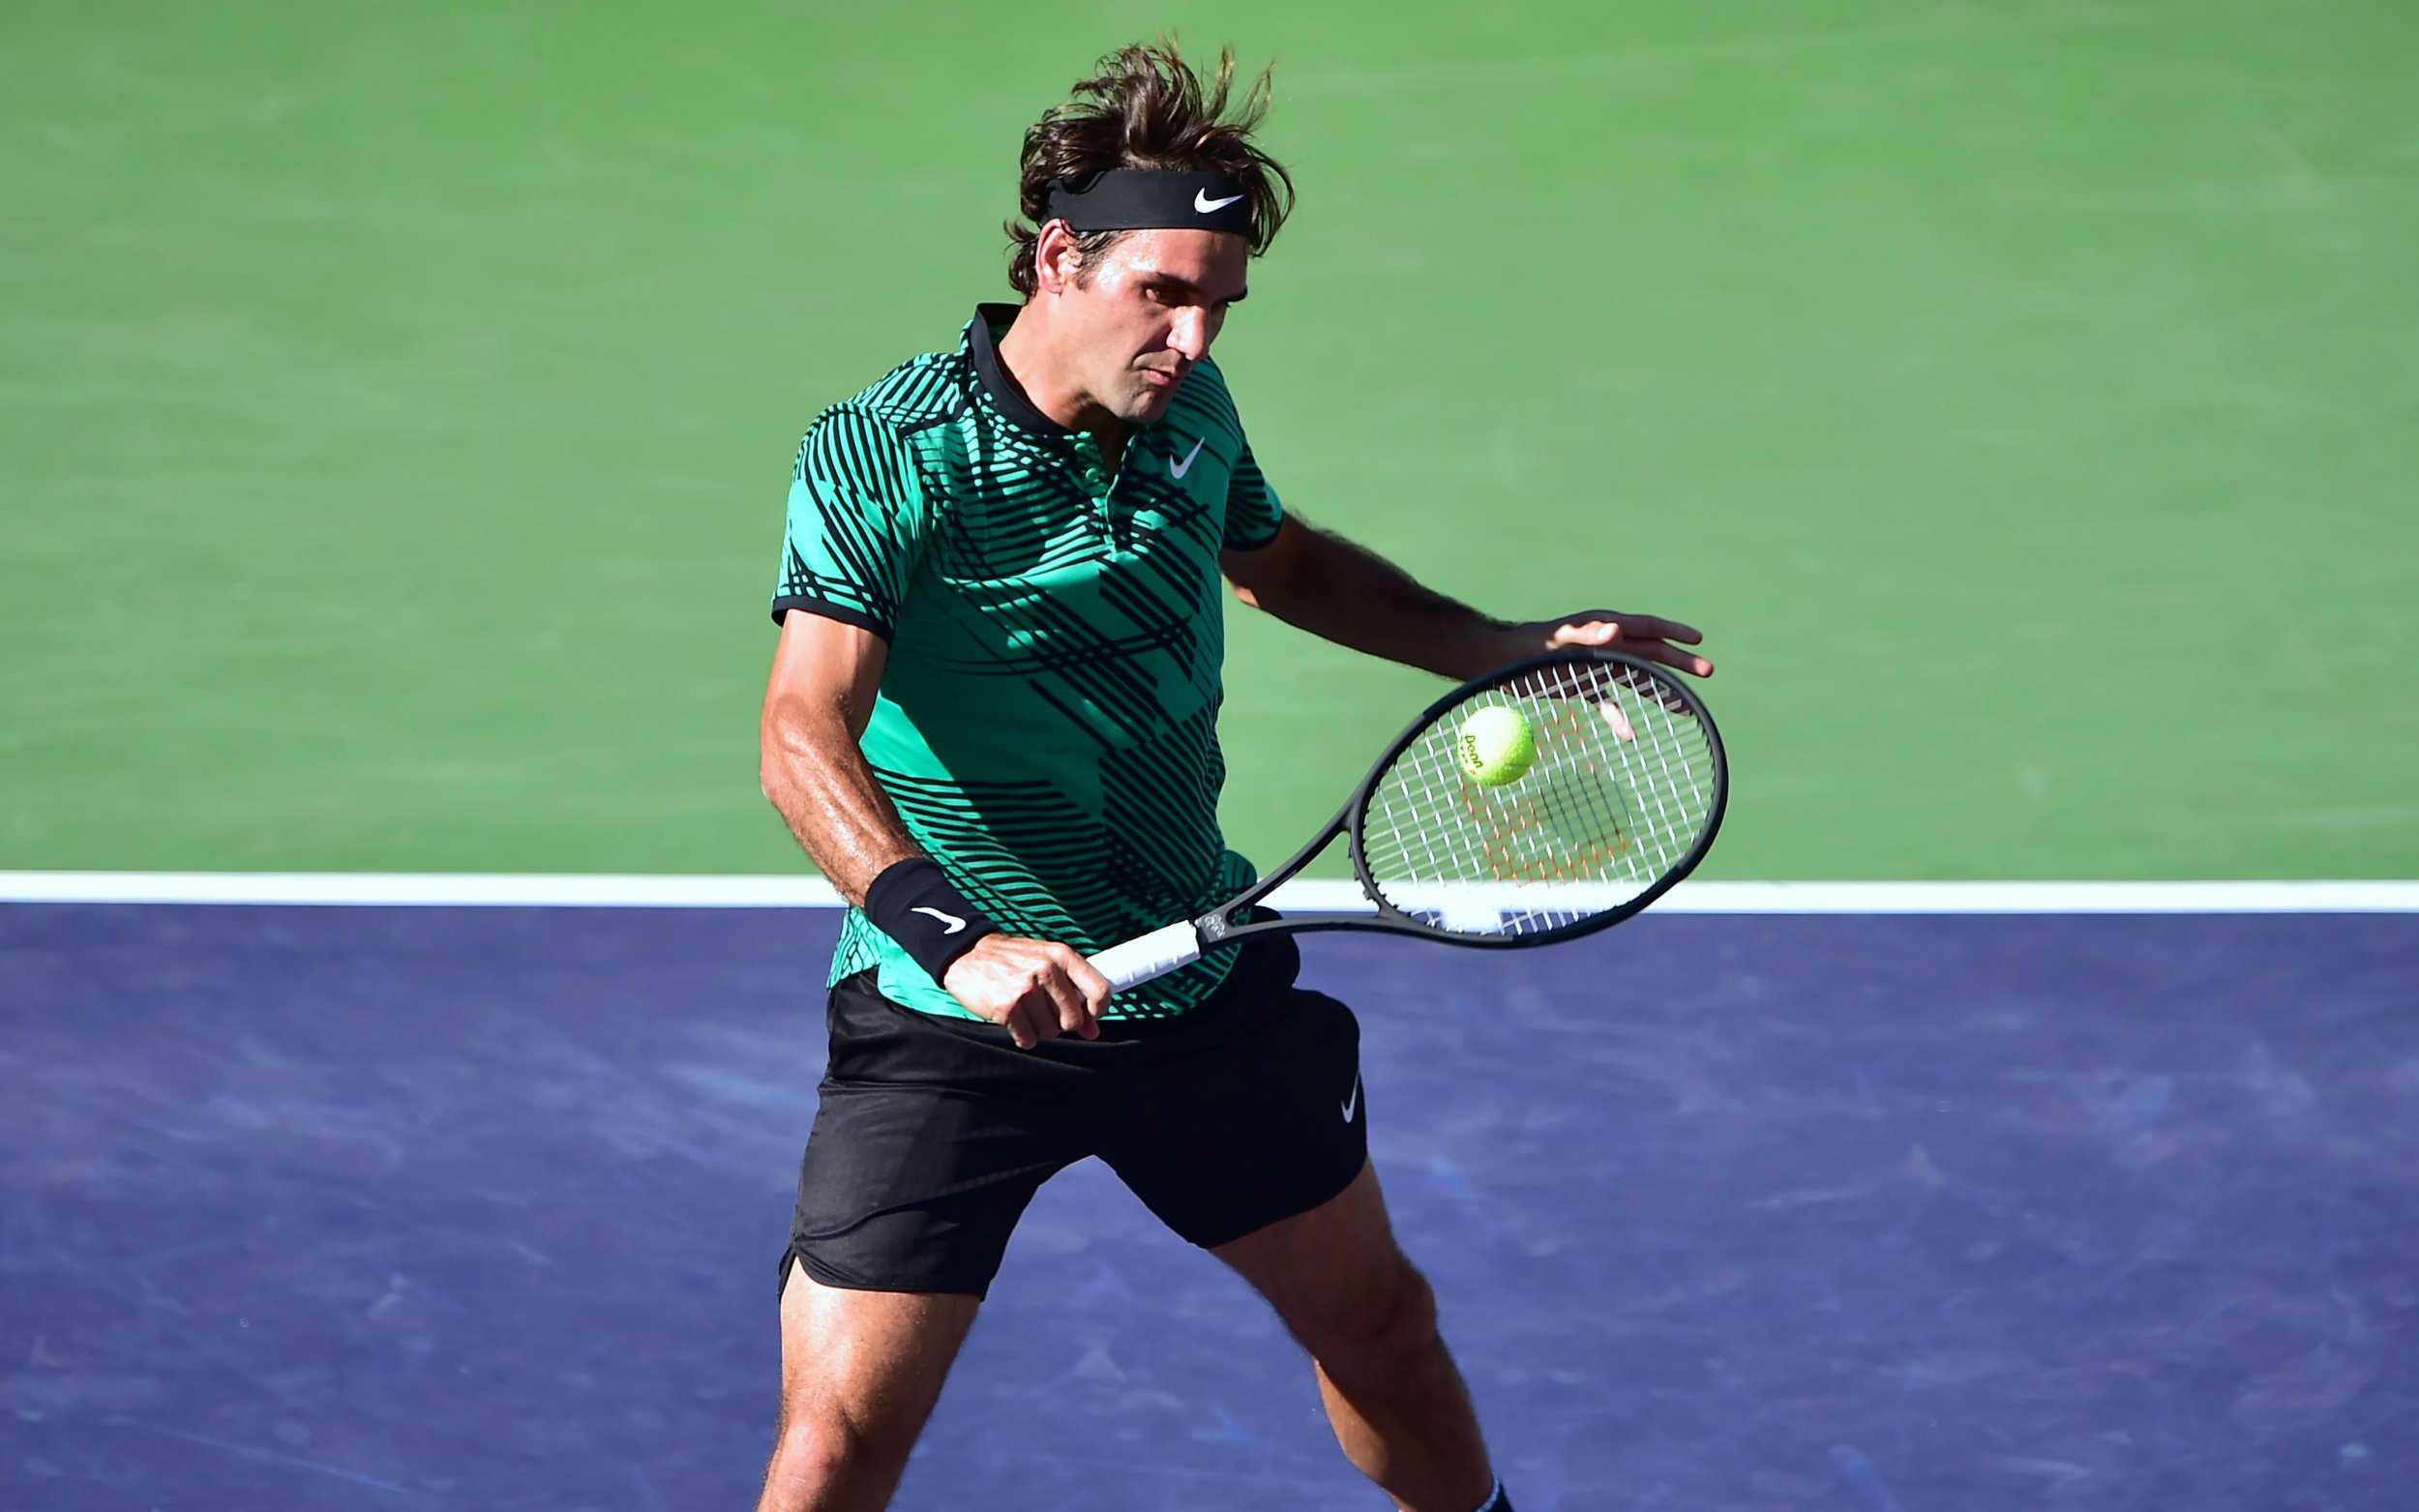 18-times Grand Slam winner Roger Federer.